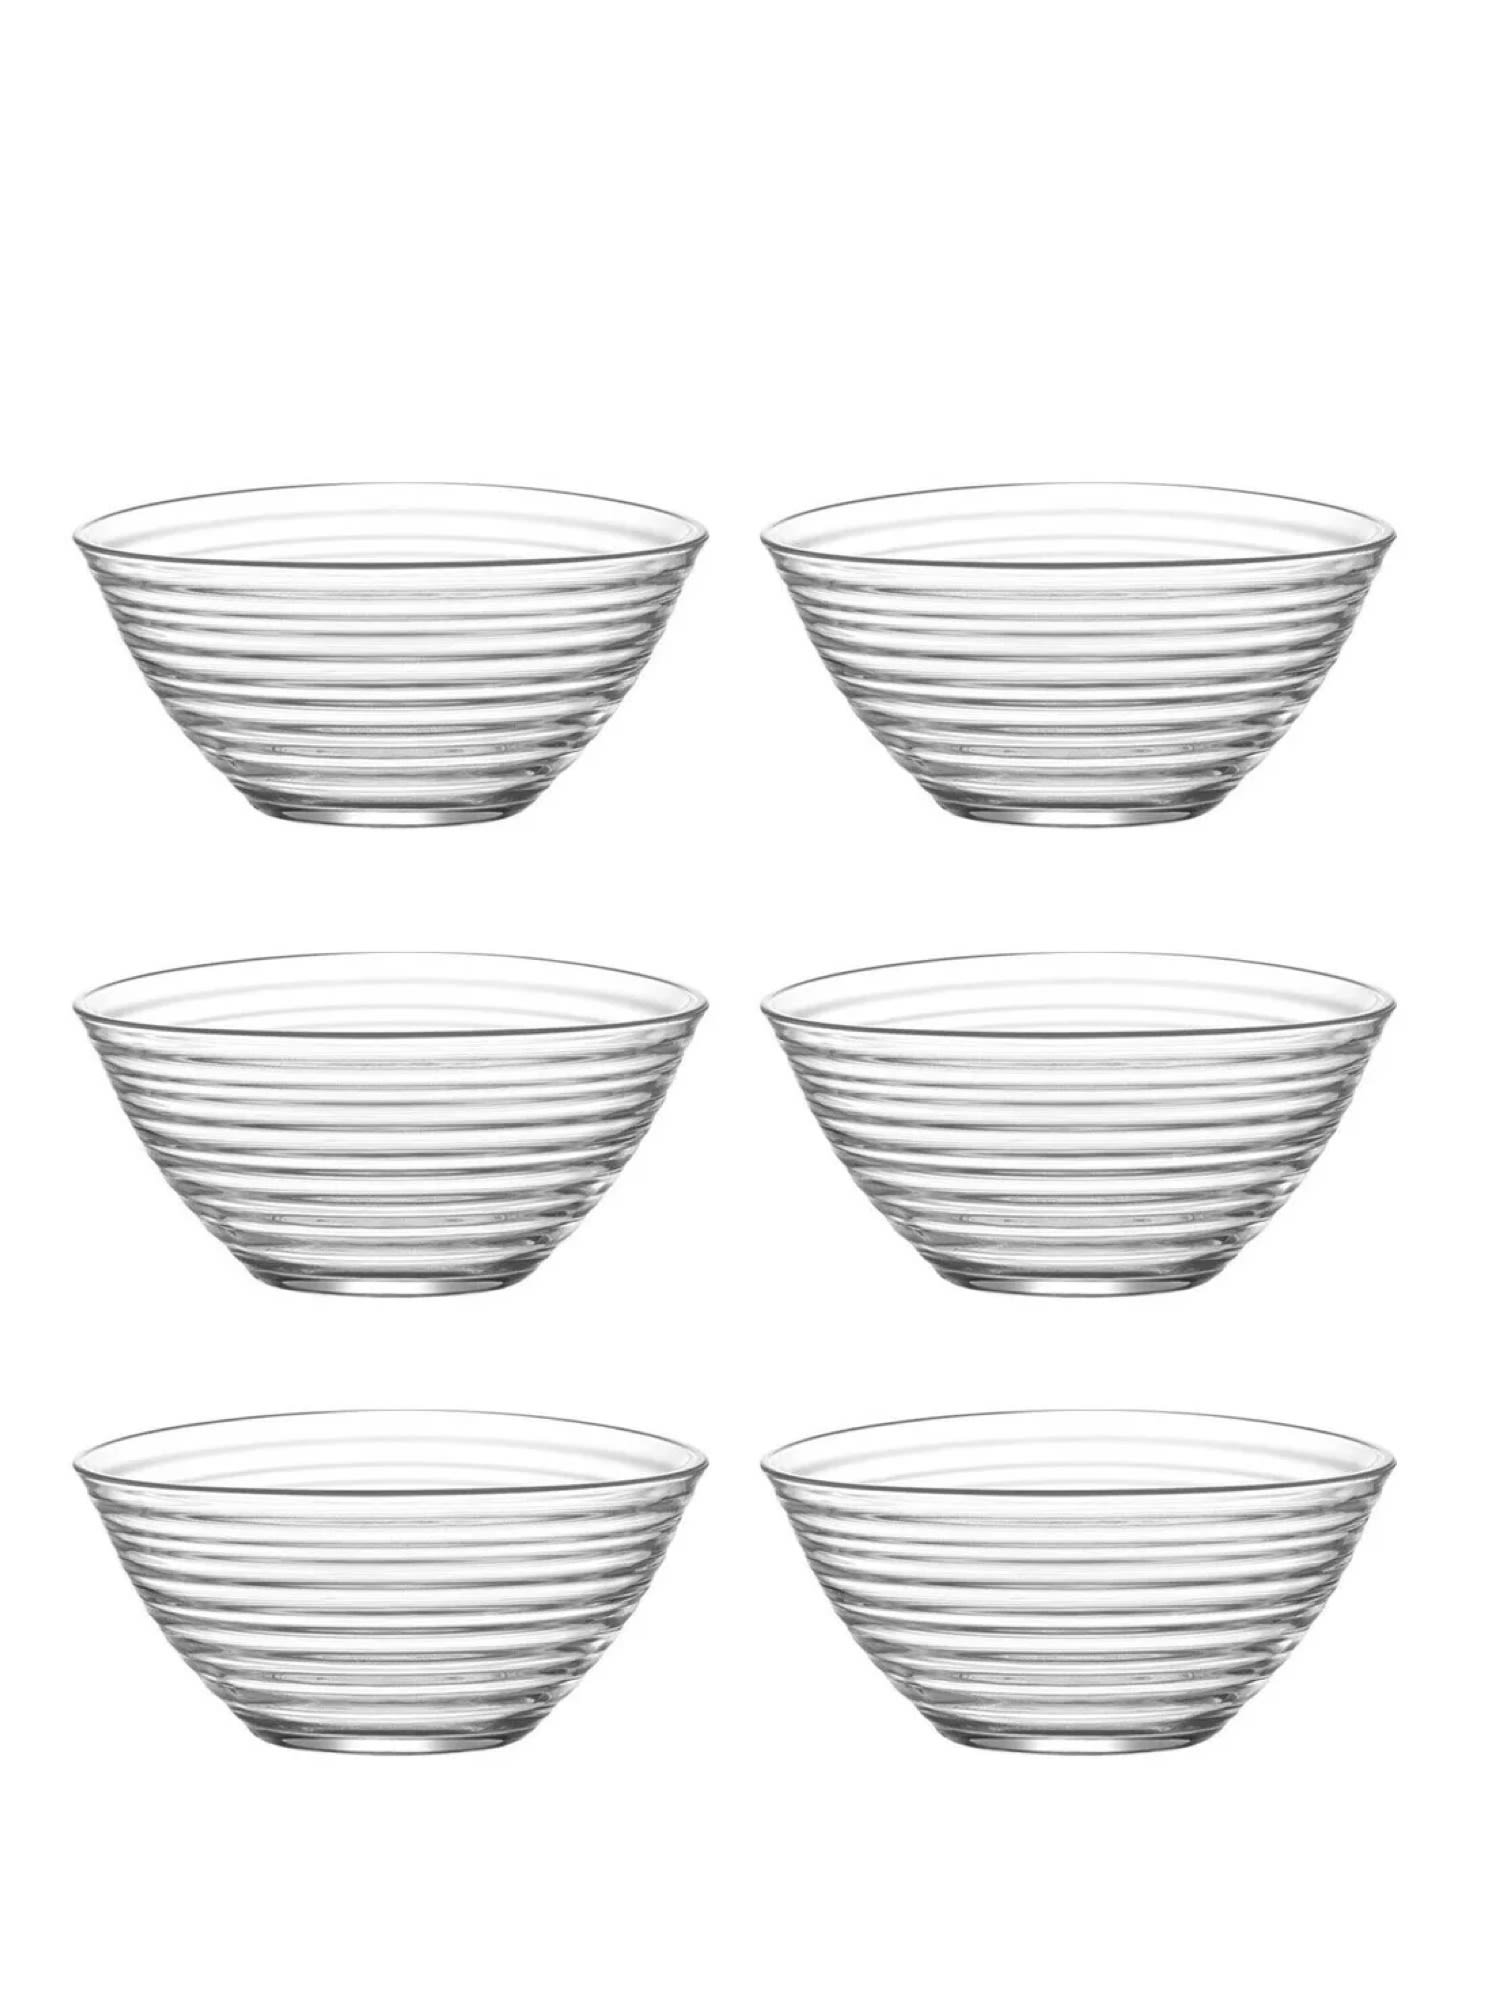 Lav bowl, 125 mm, 30 cl - en elegant skål til servering af mindre portioner eller snacks.